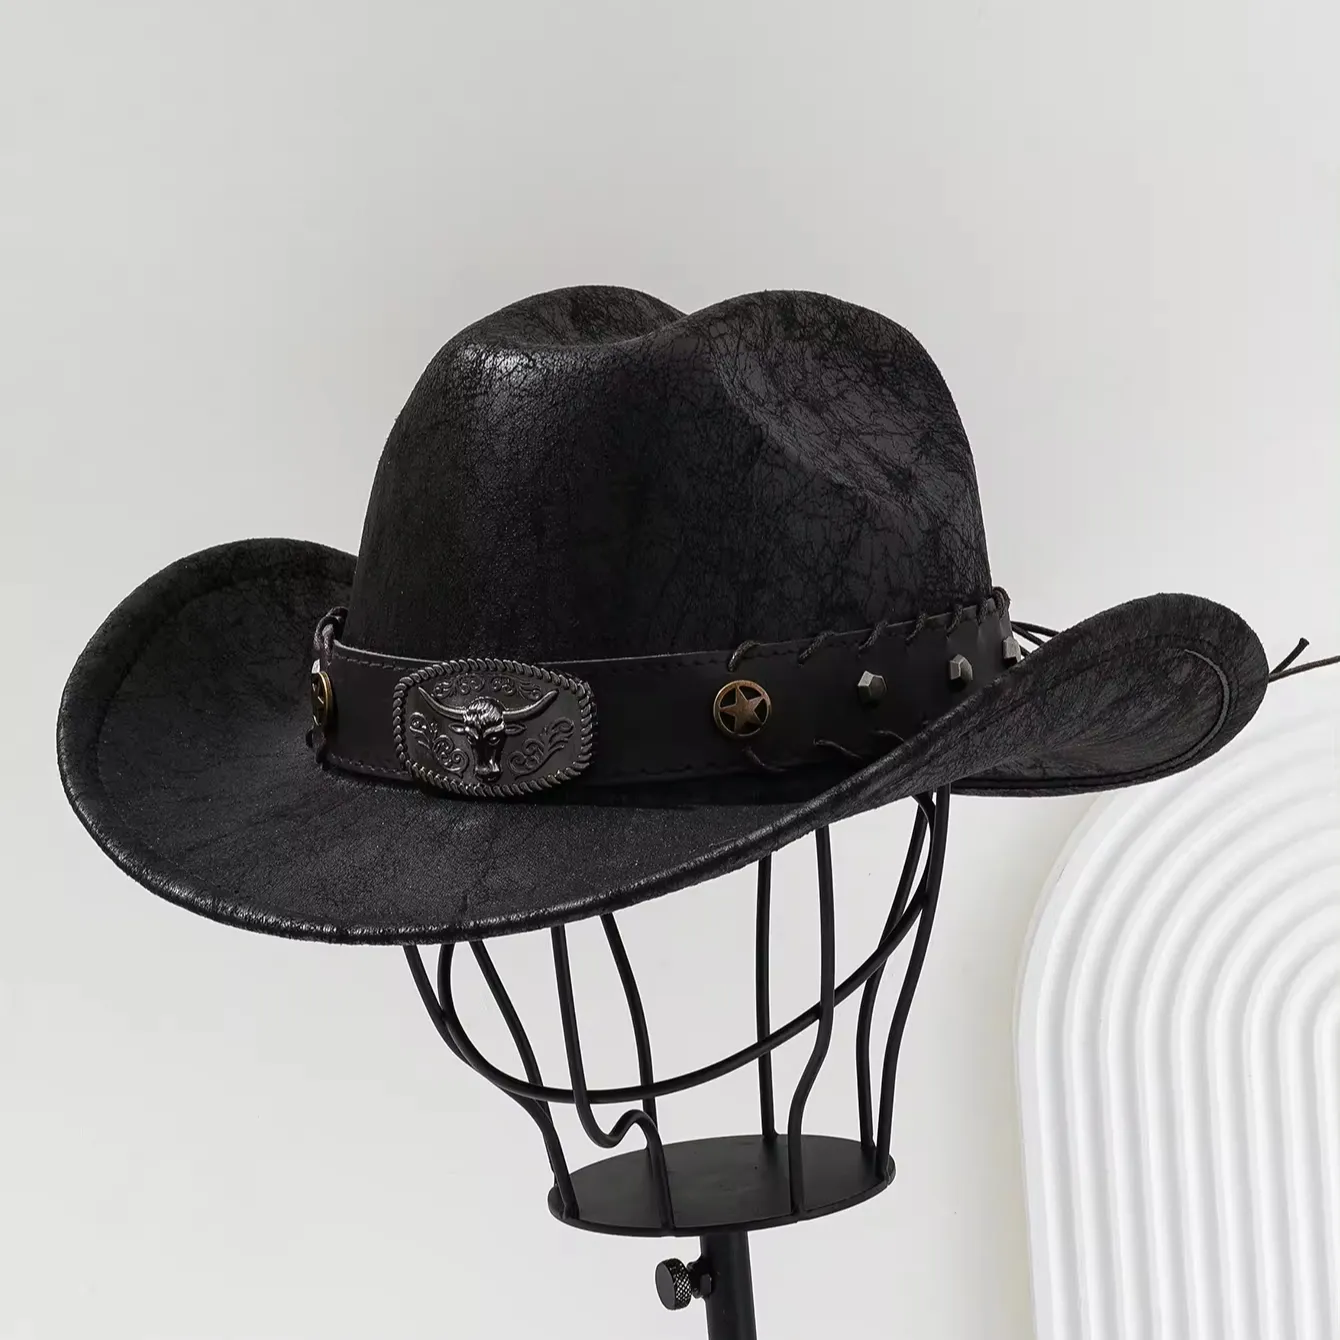 Cappello Unisex in tinta unita in pelle da Cowboy con testa di toro a tesa larga con protezione solare impreziosito da cintura in metallo